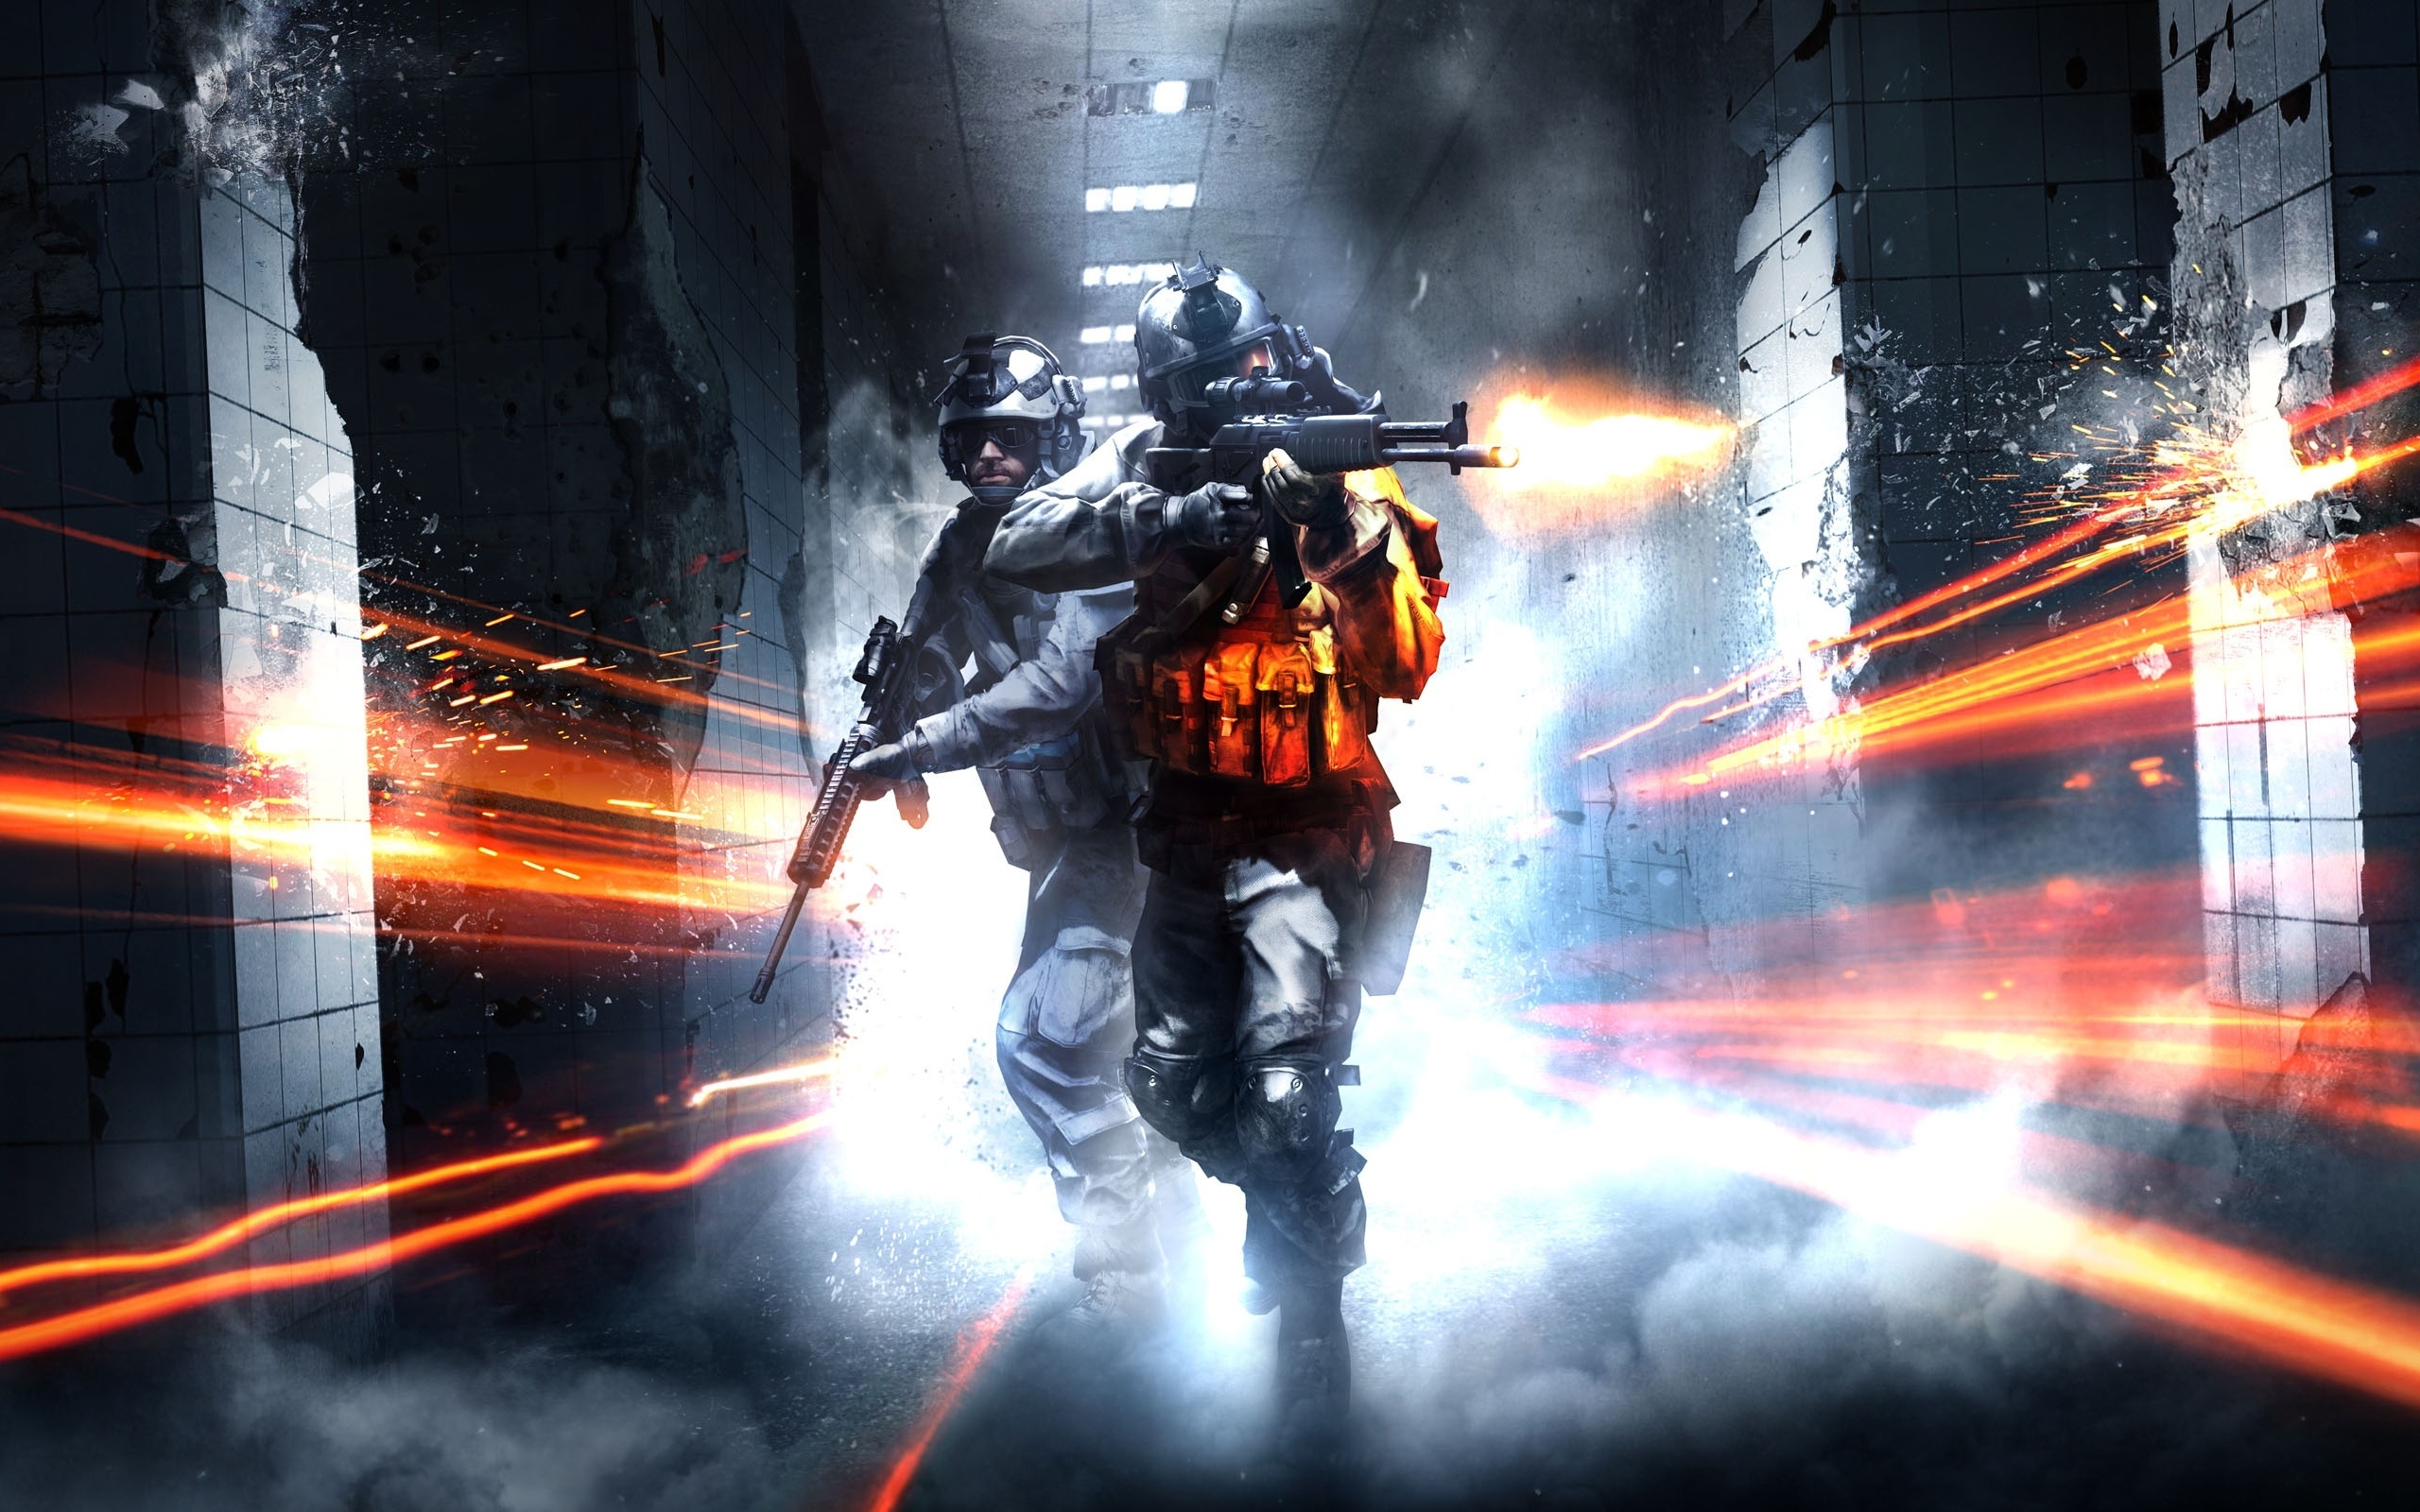 Battlefield 3 Co Op for 2560 x 1600 widescreen resolution